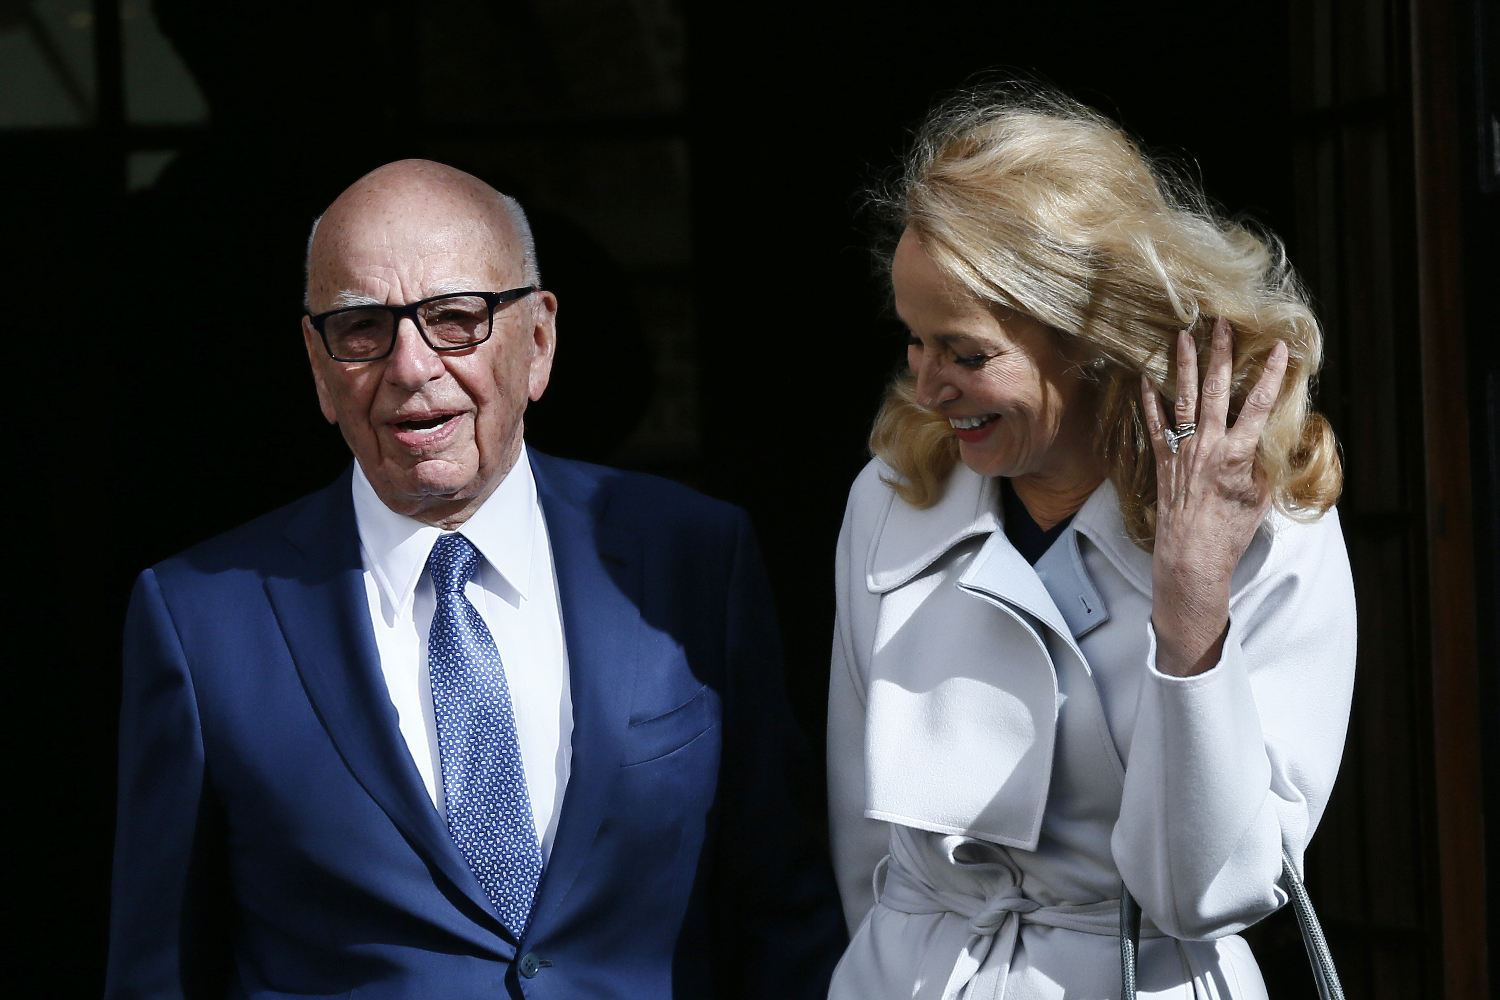 La boda civil del magnate Rupert Murdoch con la modelo Jerry Hall